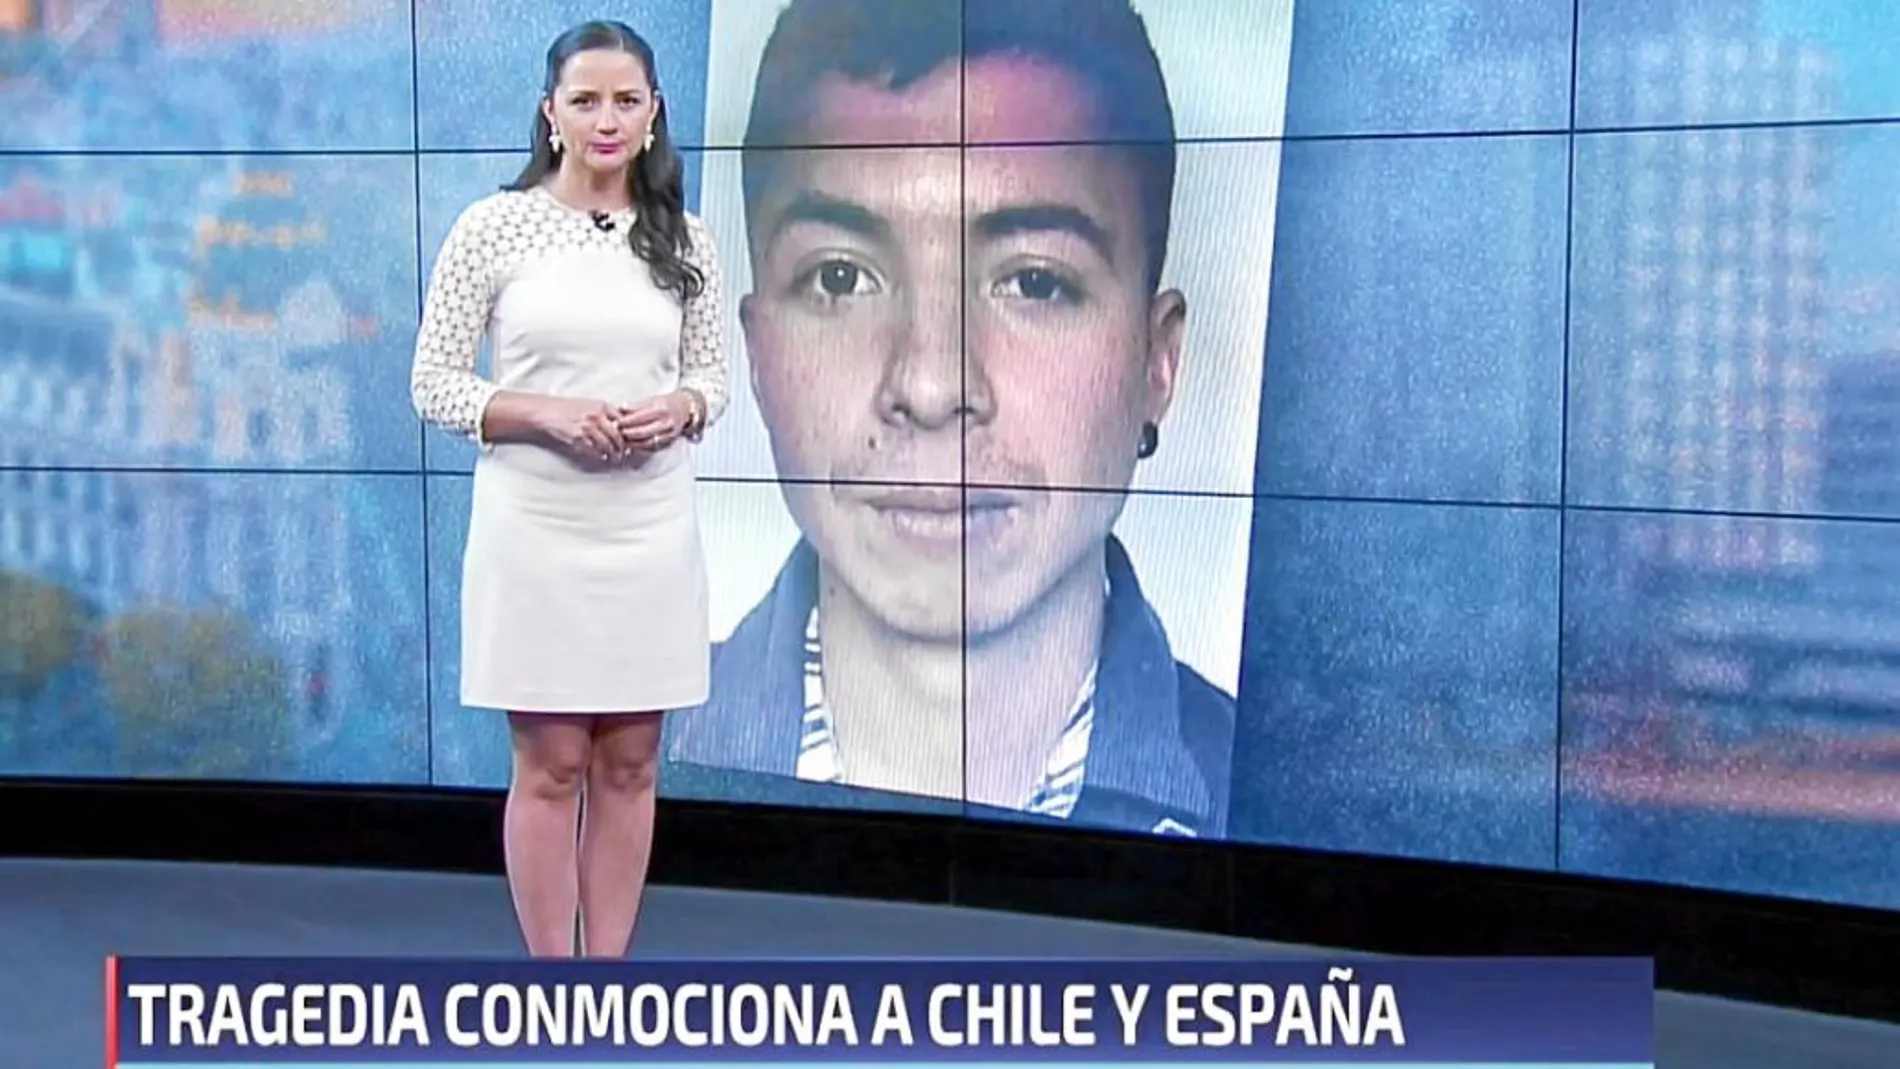 Los medios de comunicación chilenos recogieron ayer el suceso e informaron de los antecedentes